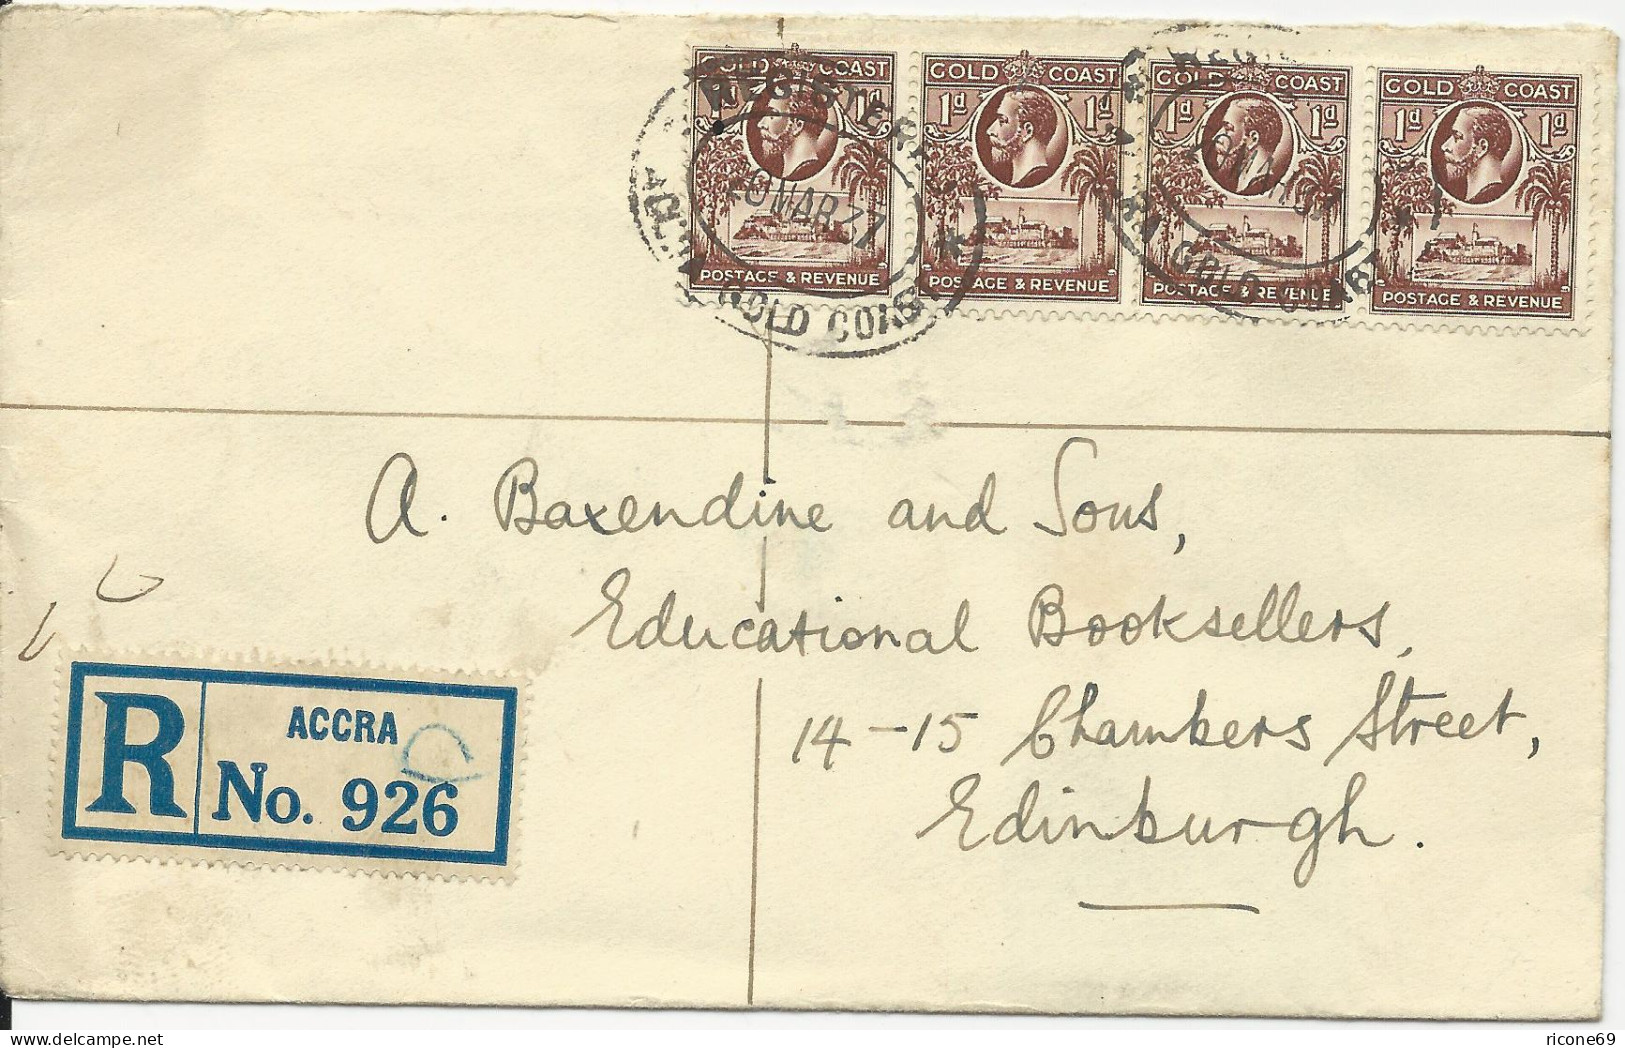 Gold Coast 1937, 4x1d Auf Einschreiben Brief V. Accra N. GB - Africa (Other)